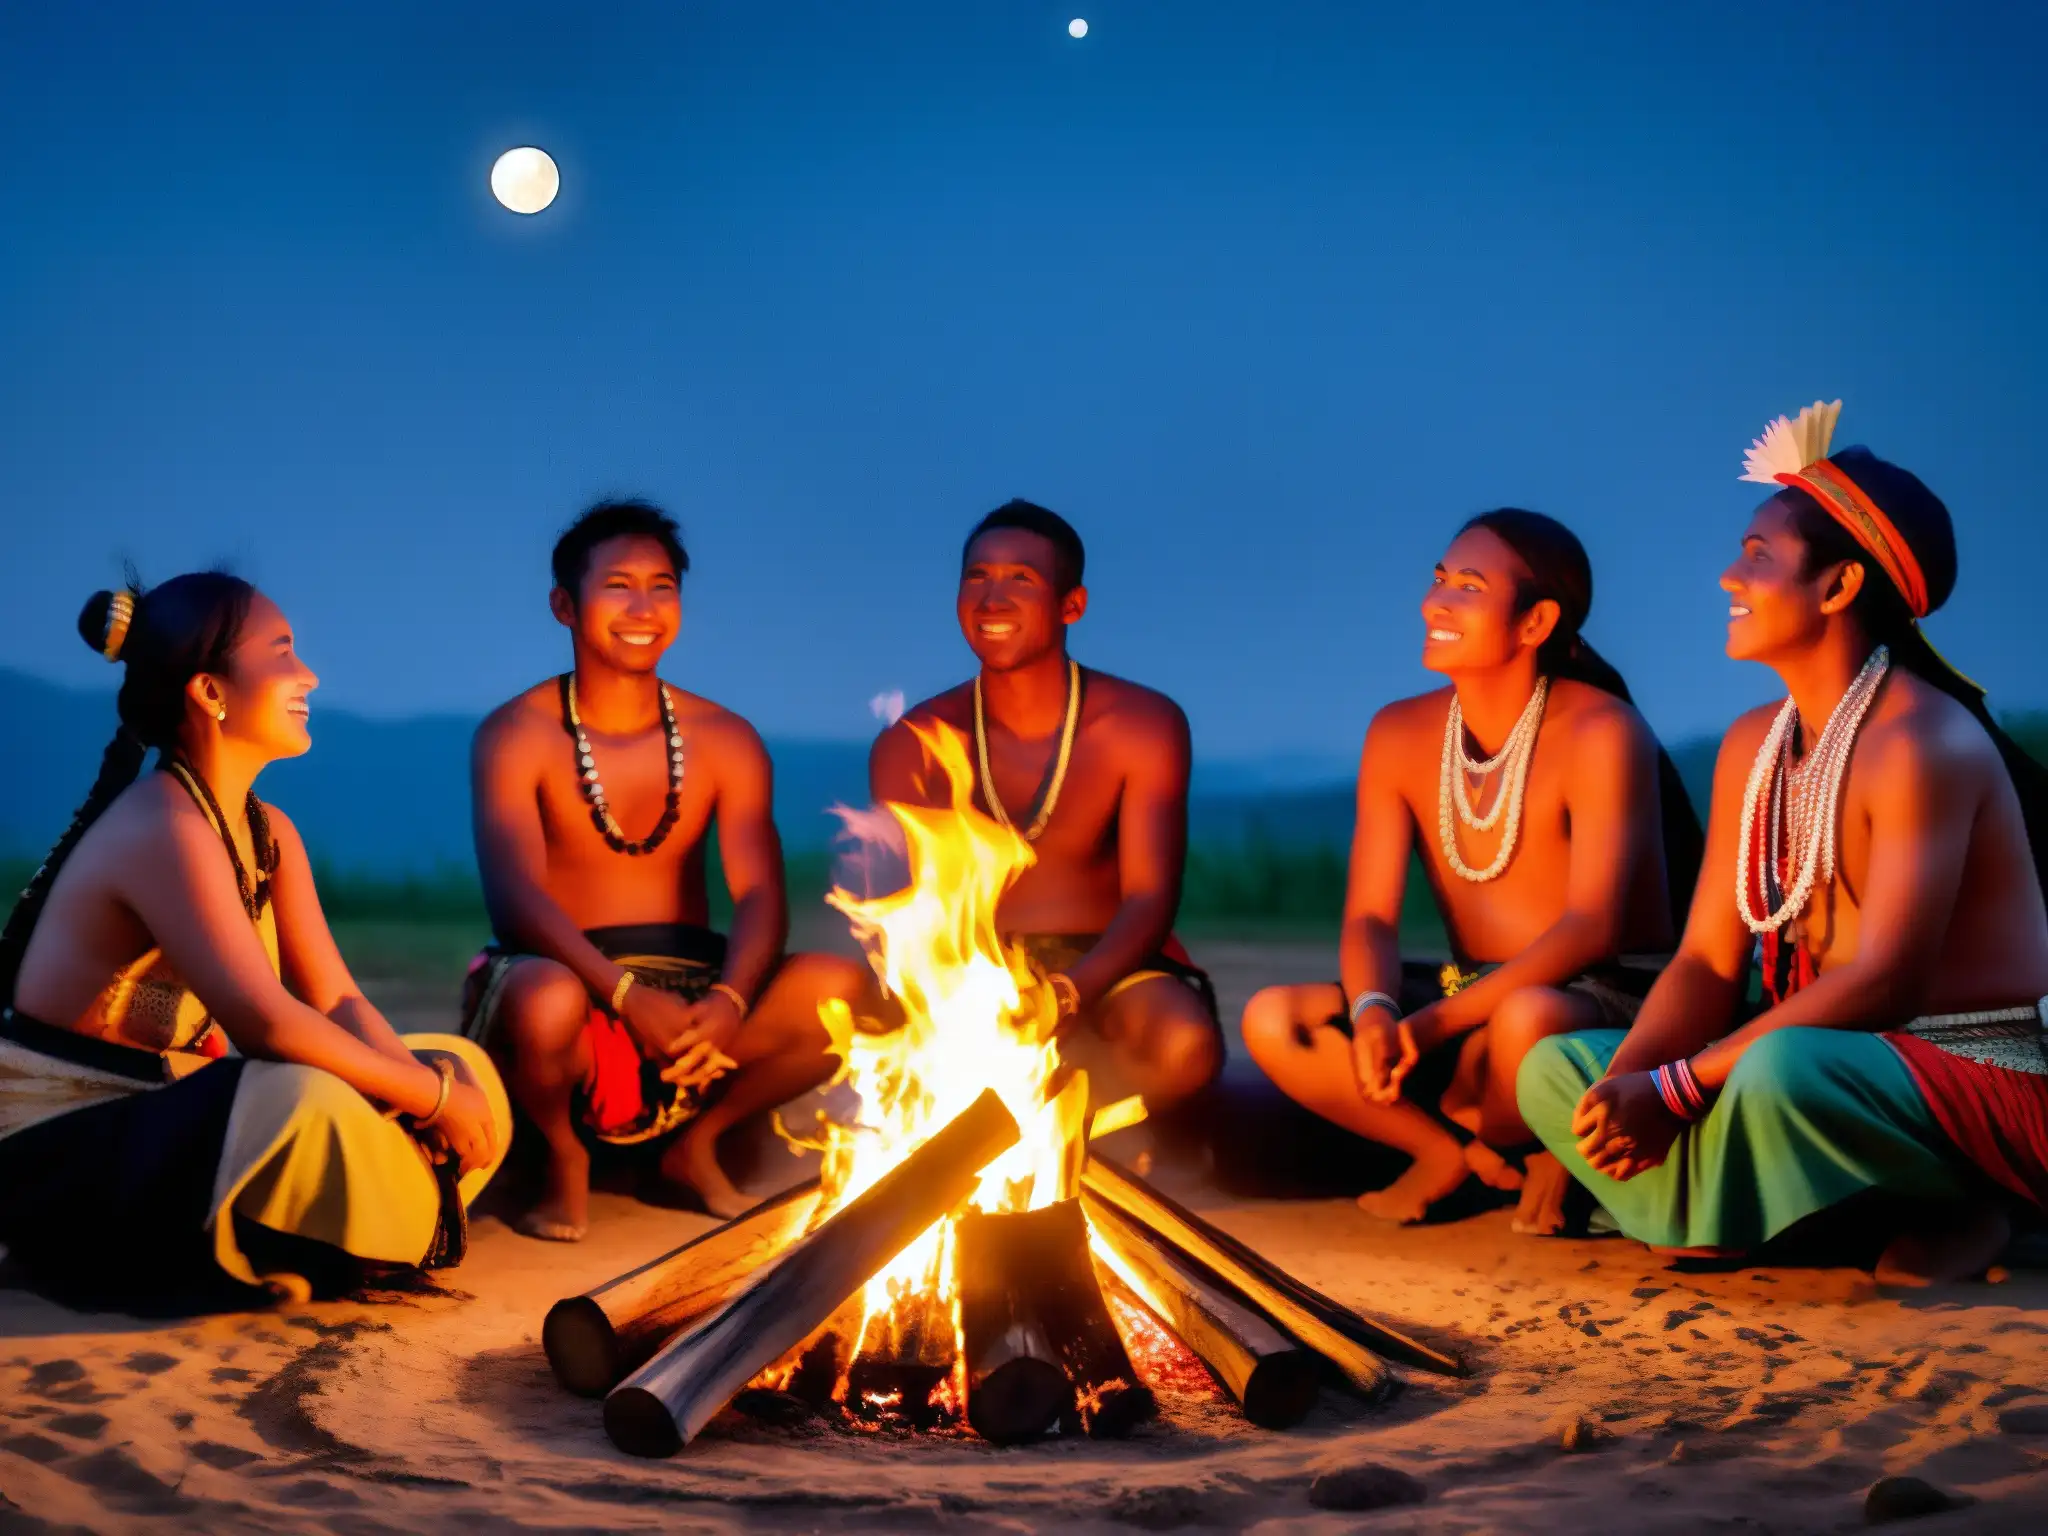 Un grupo de aldeanos se reúne alrededor de una fogata, realizando un baile ceremonial bajo el cielo iluminado por la luna